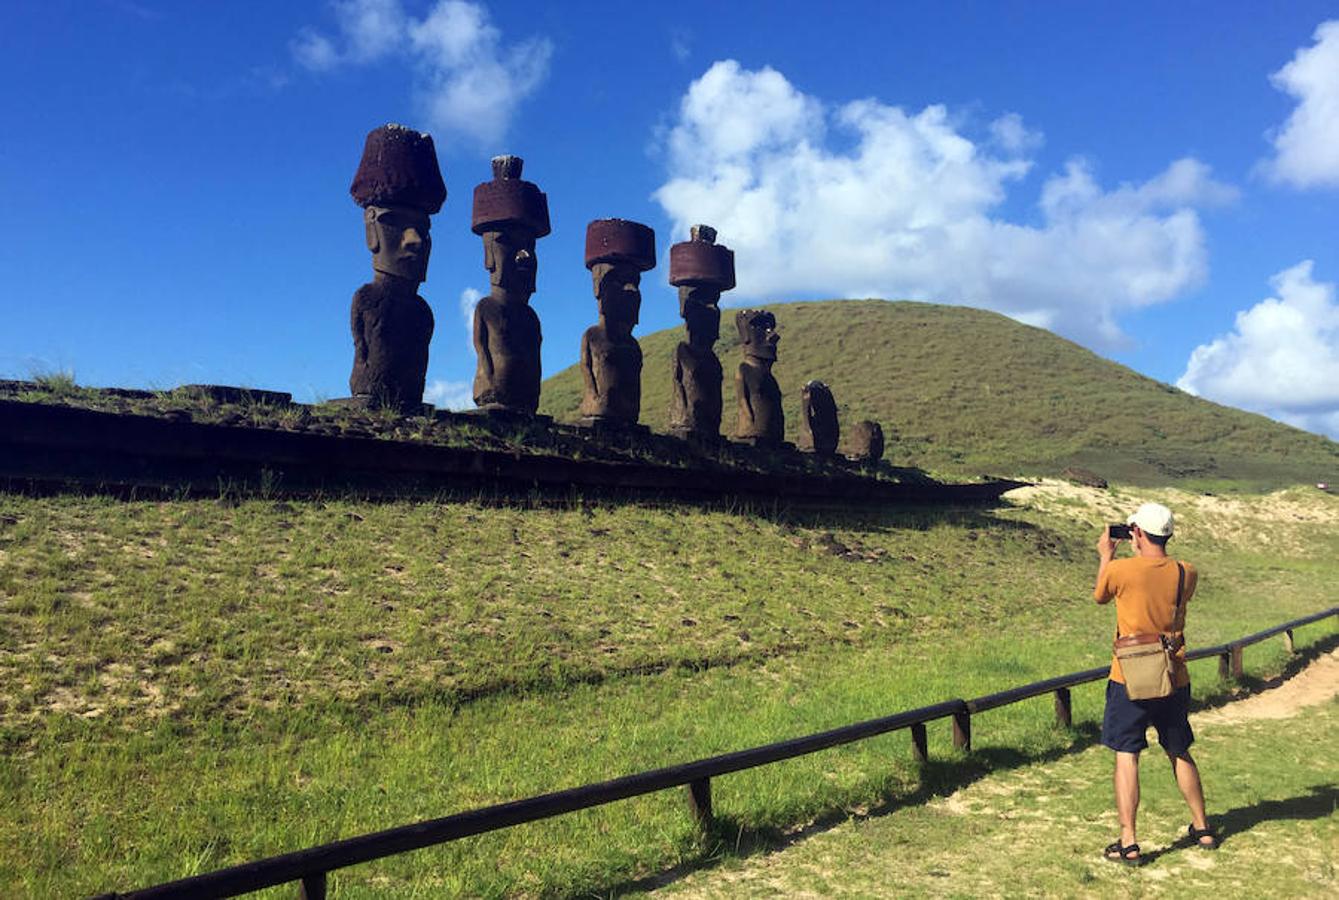 Las comunidades locales también buscan enfocarse en un tipo de turismo que promueva el desarrollo sostenible y sus restos arqueológicos, y que mantenga las características de la cultura Rapa Nui.